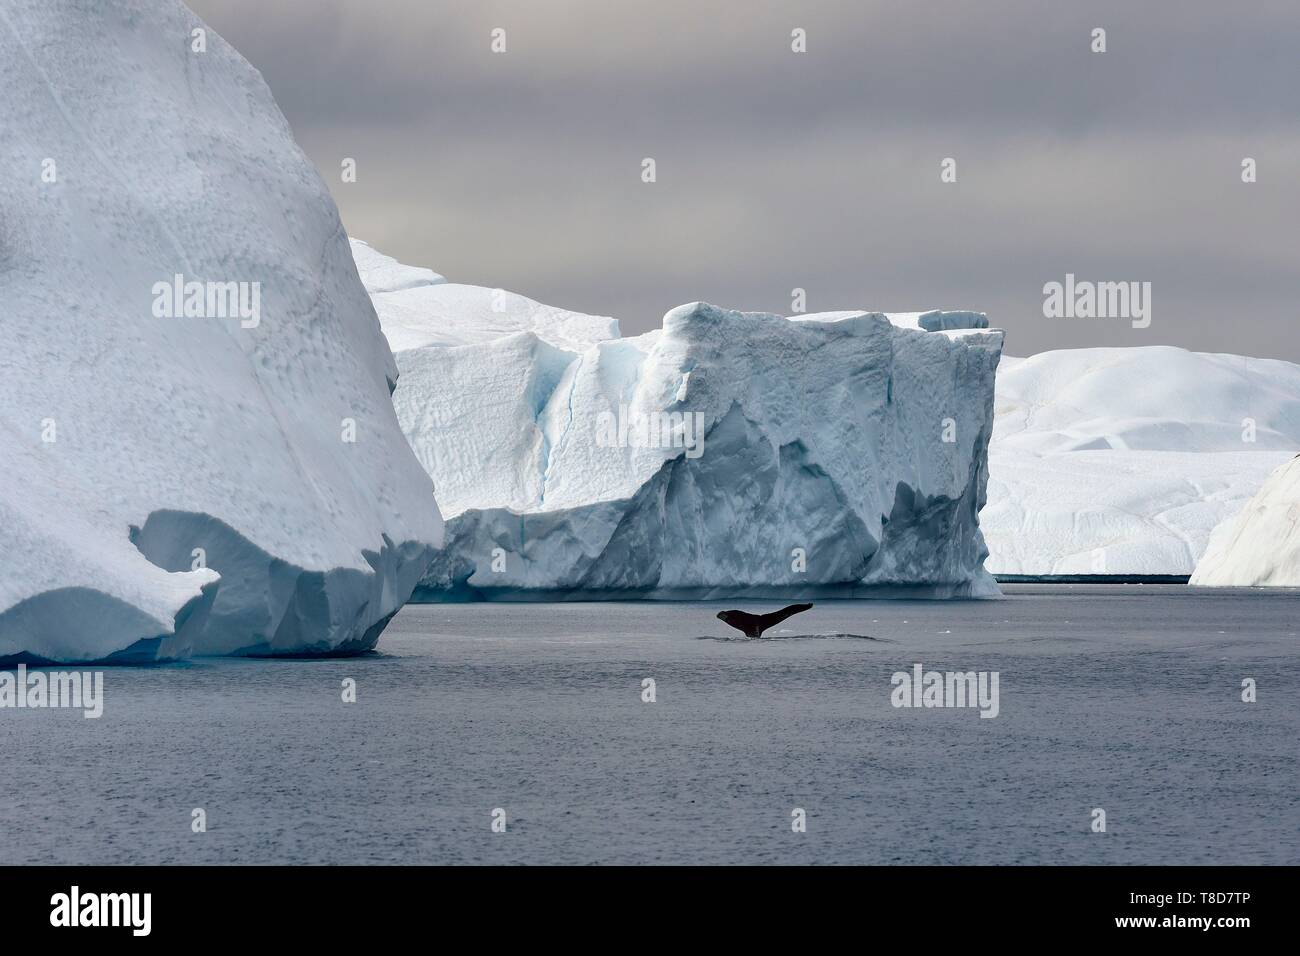 Grönland, Westküste, Diskobucht, Ilulissat Icefjord als Weltkulturerbe von der UNESCO, ist der Mund der Gletscher Sermeq Kujalleq, Schwanz einer tauchen Buckelwal (Megaptera novaeangliae) vor einem Eisberg aufgeführt Stockfoto